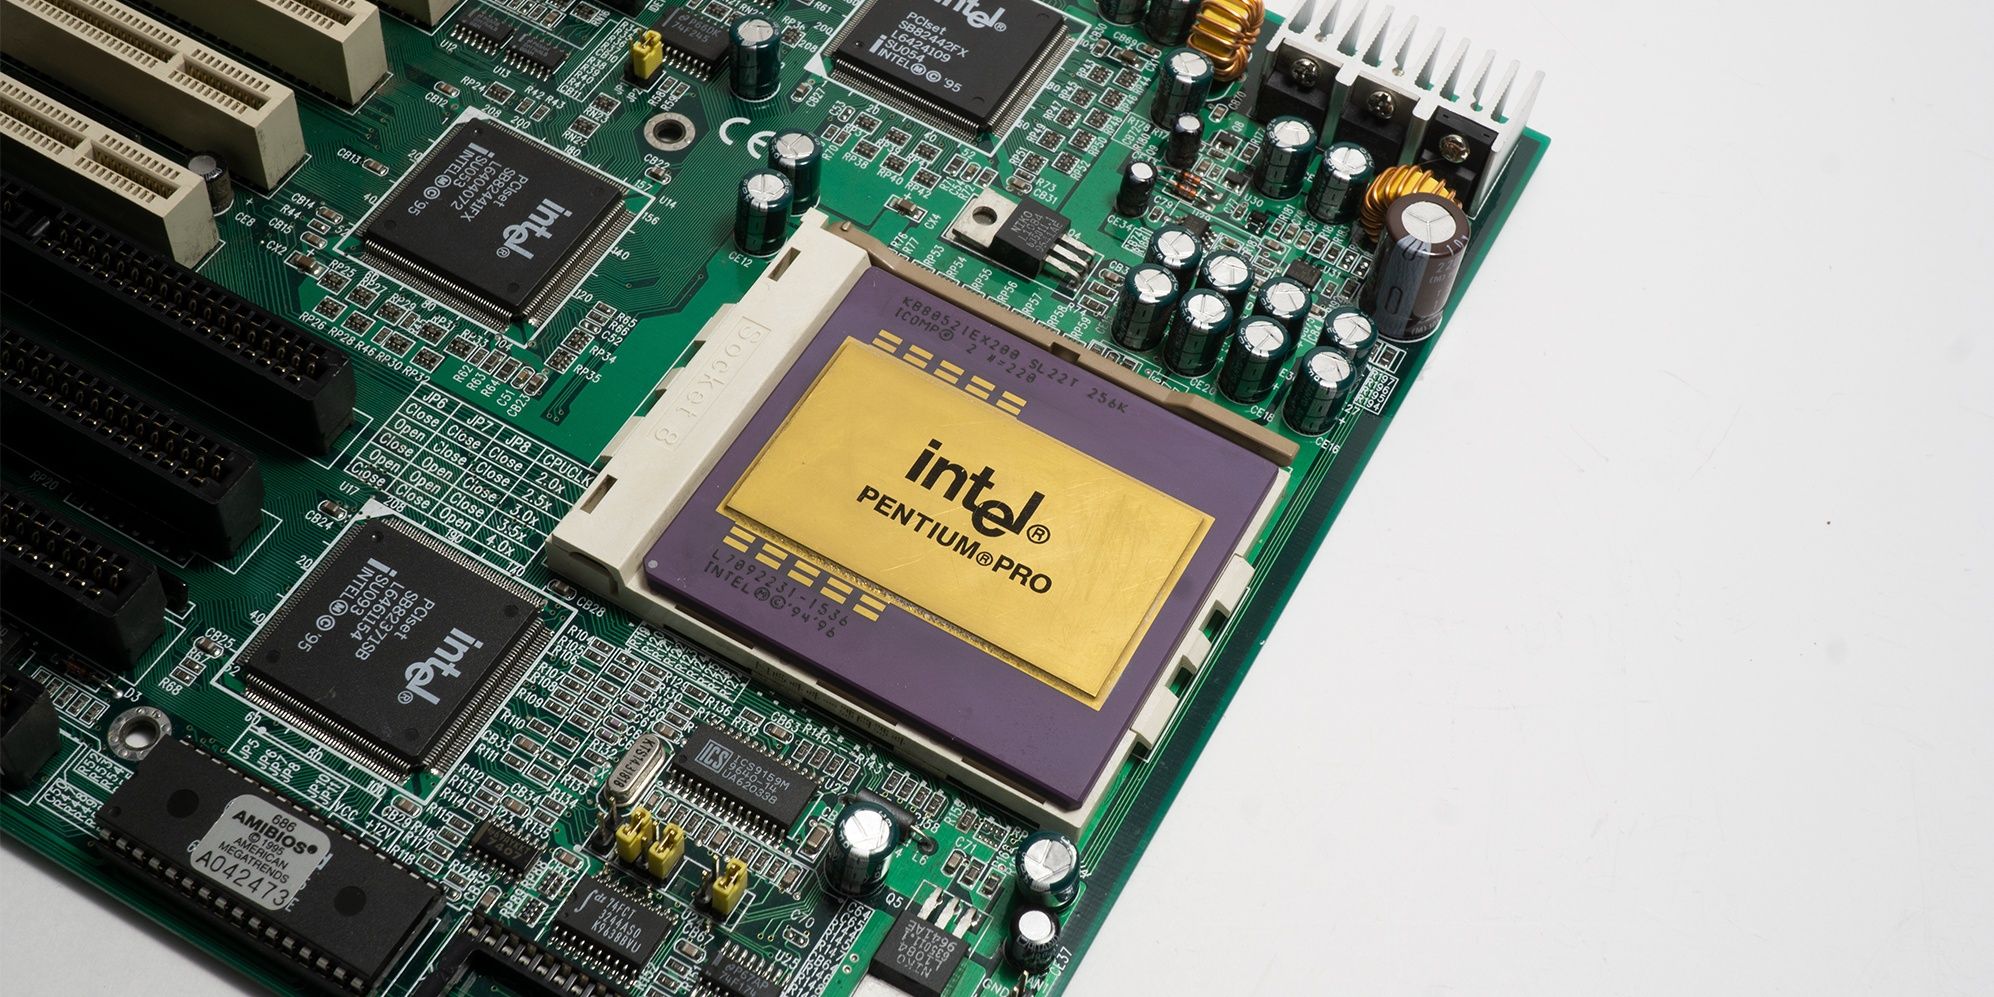 A socketed Intel Pentium CPU